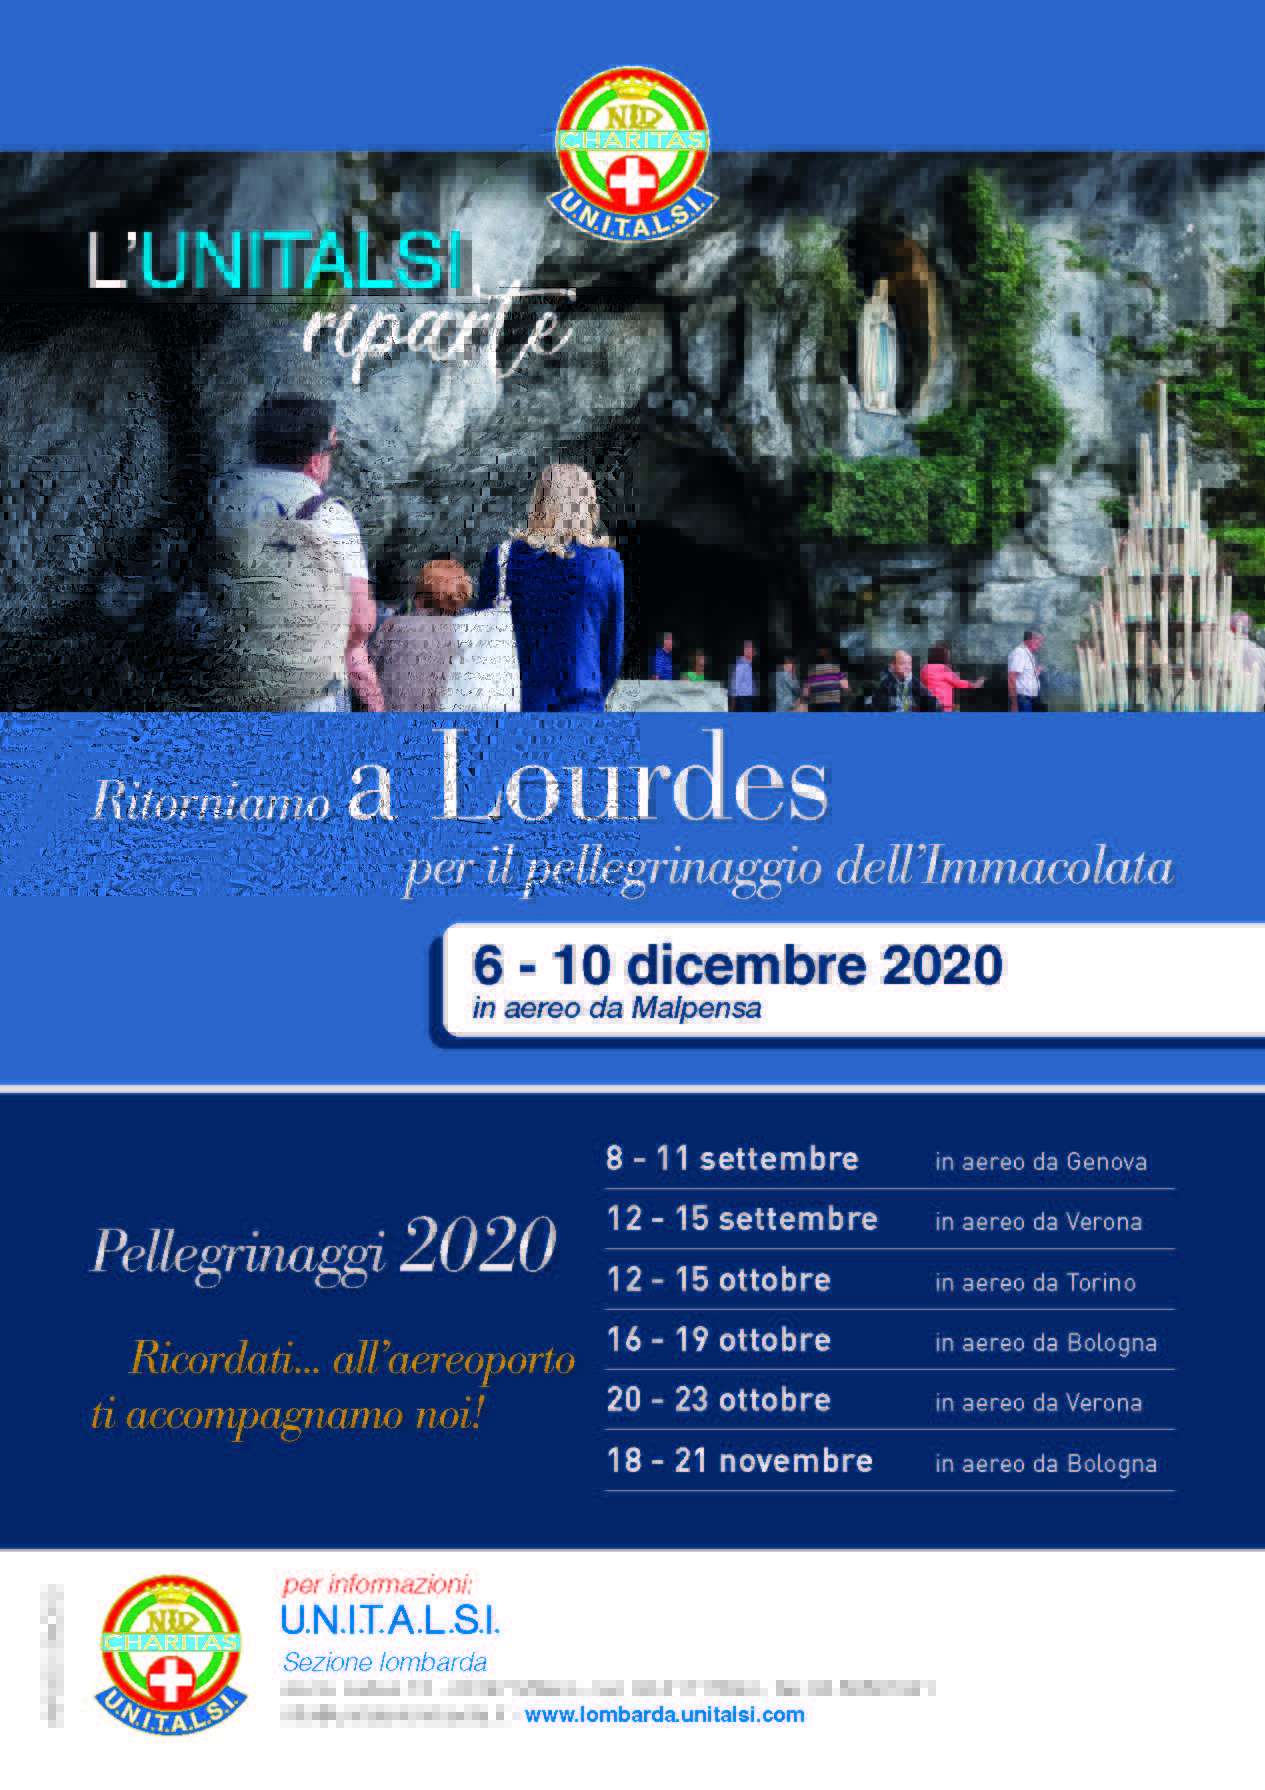 Unitalsi Lombarda: una rete tra le Sezioni del Nord Italia per raggiungere Lourdes